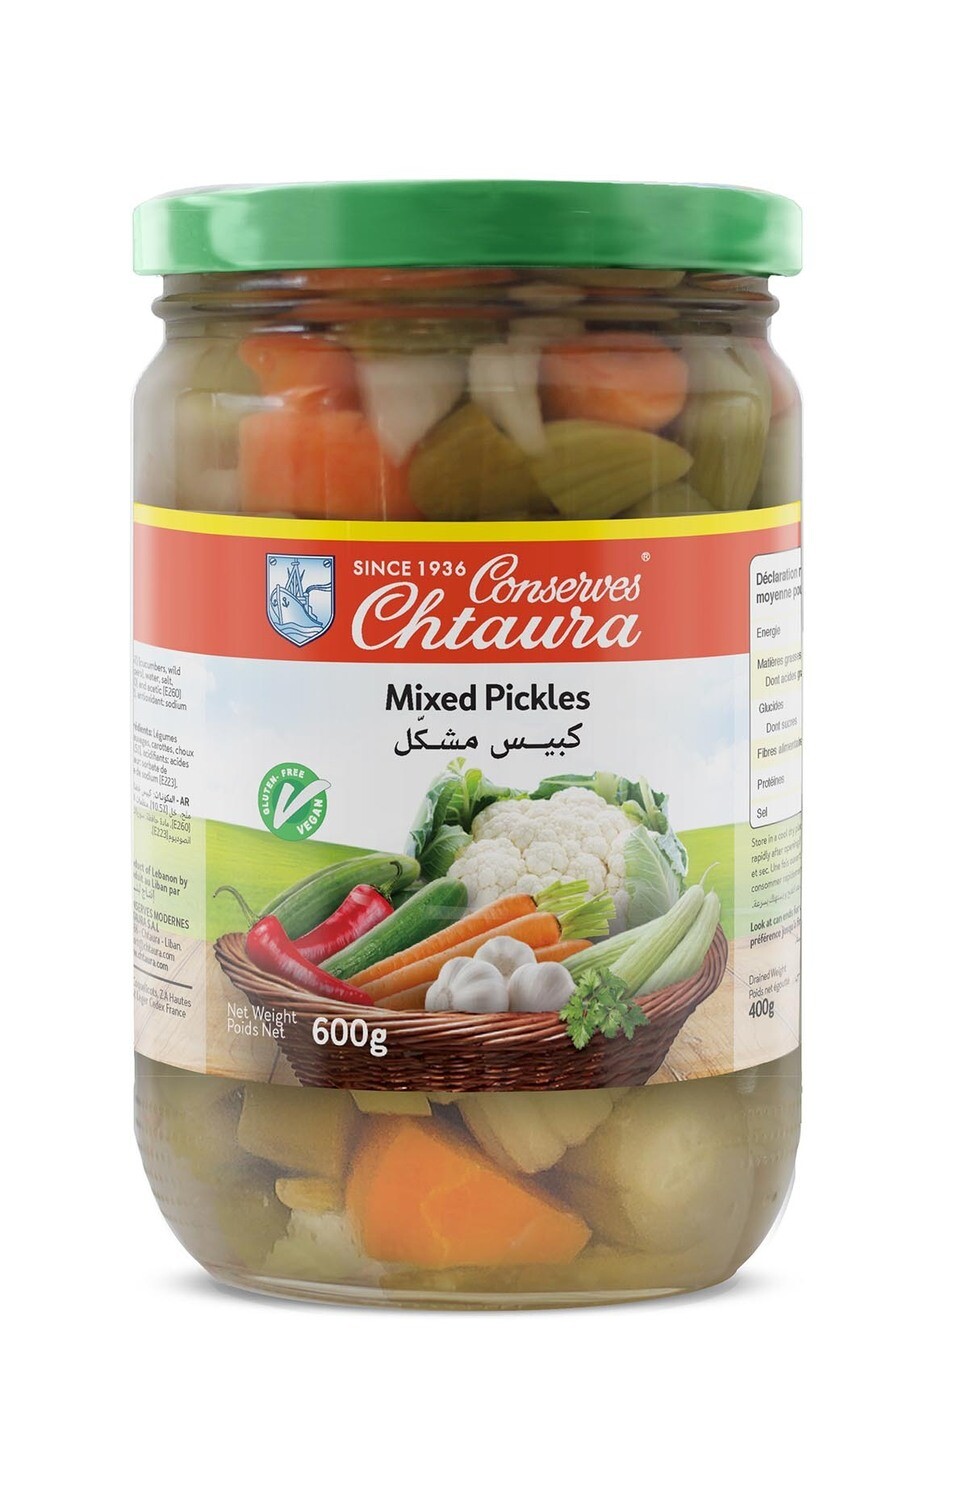 Mixed Pickles, 600g - eingelegtes Gemüse